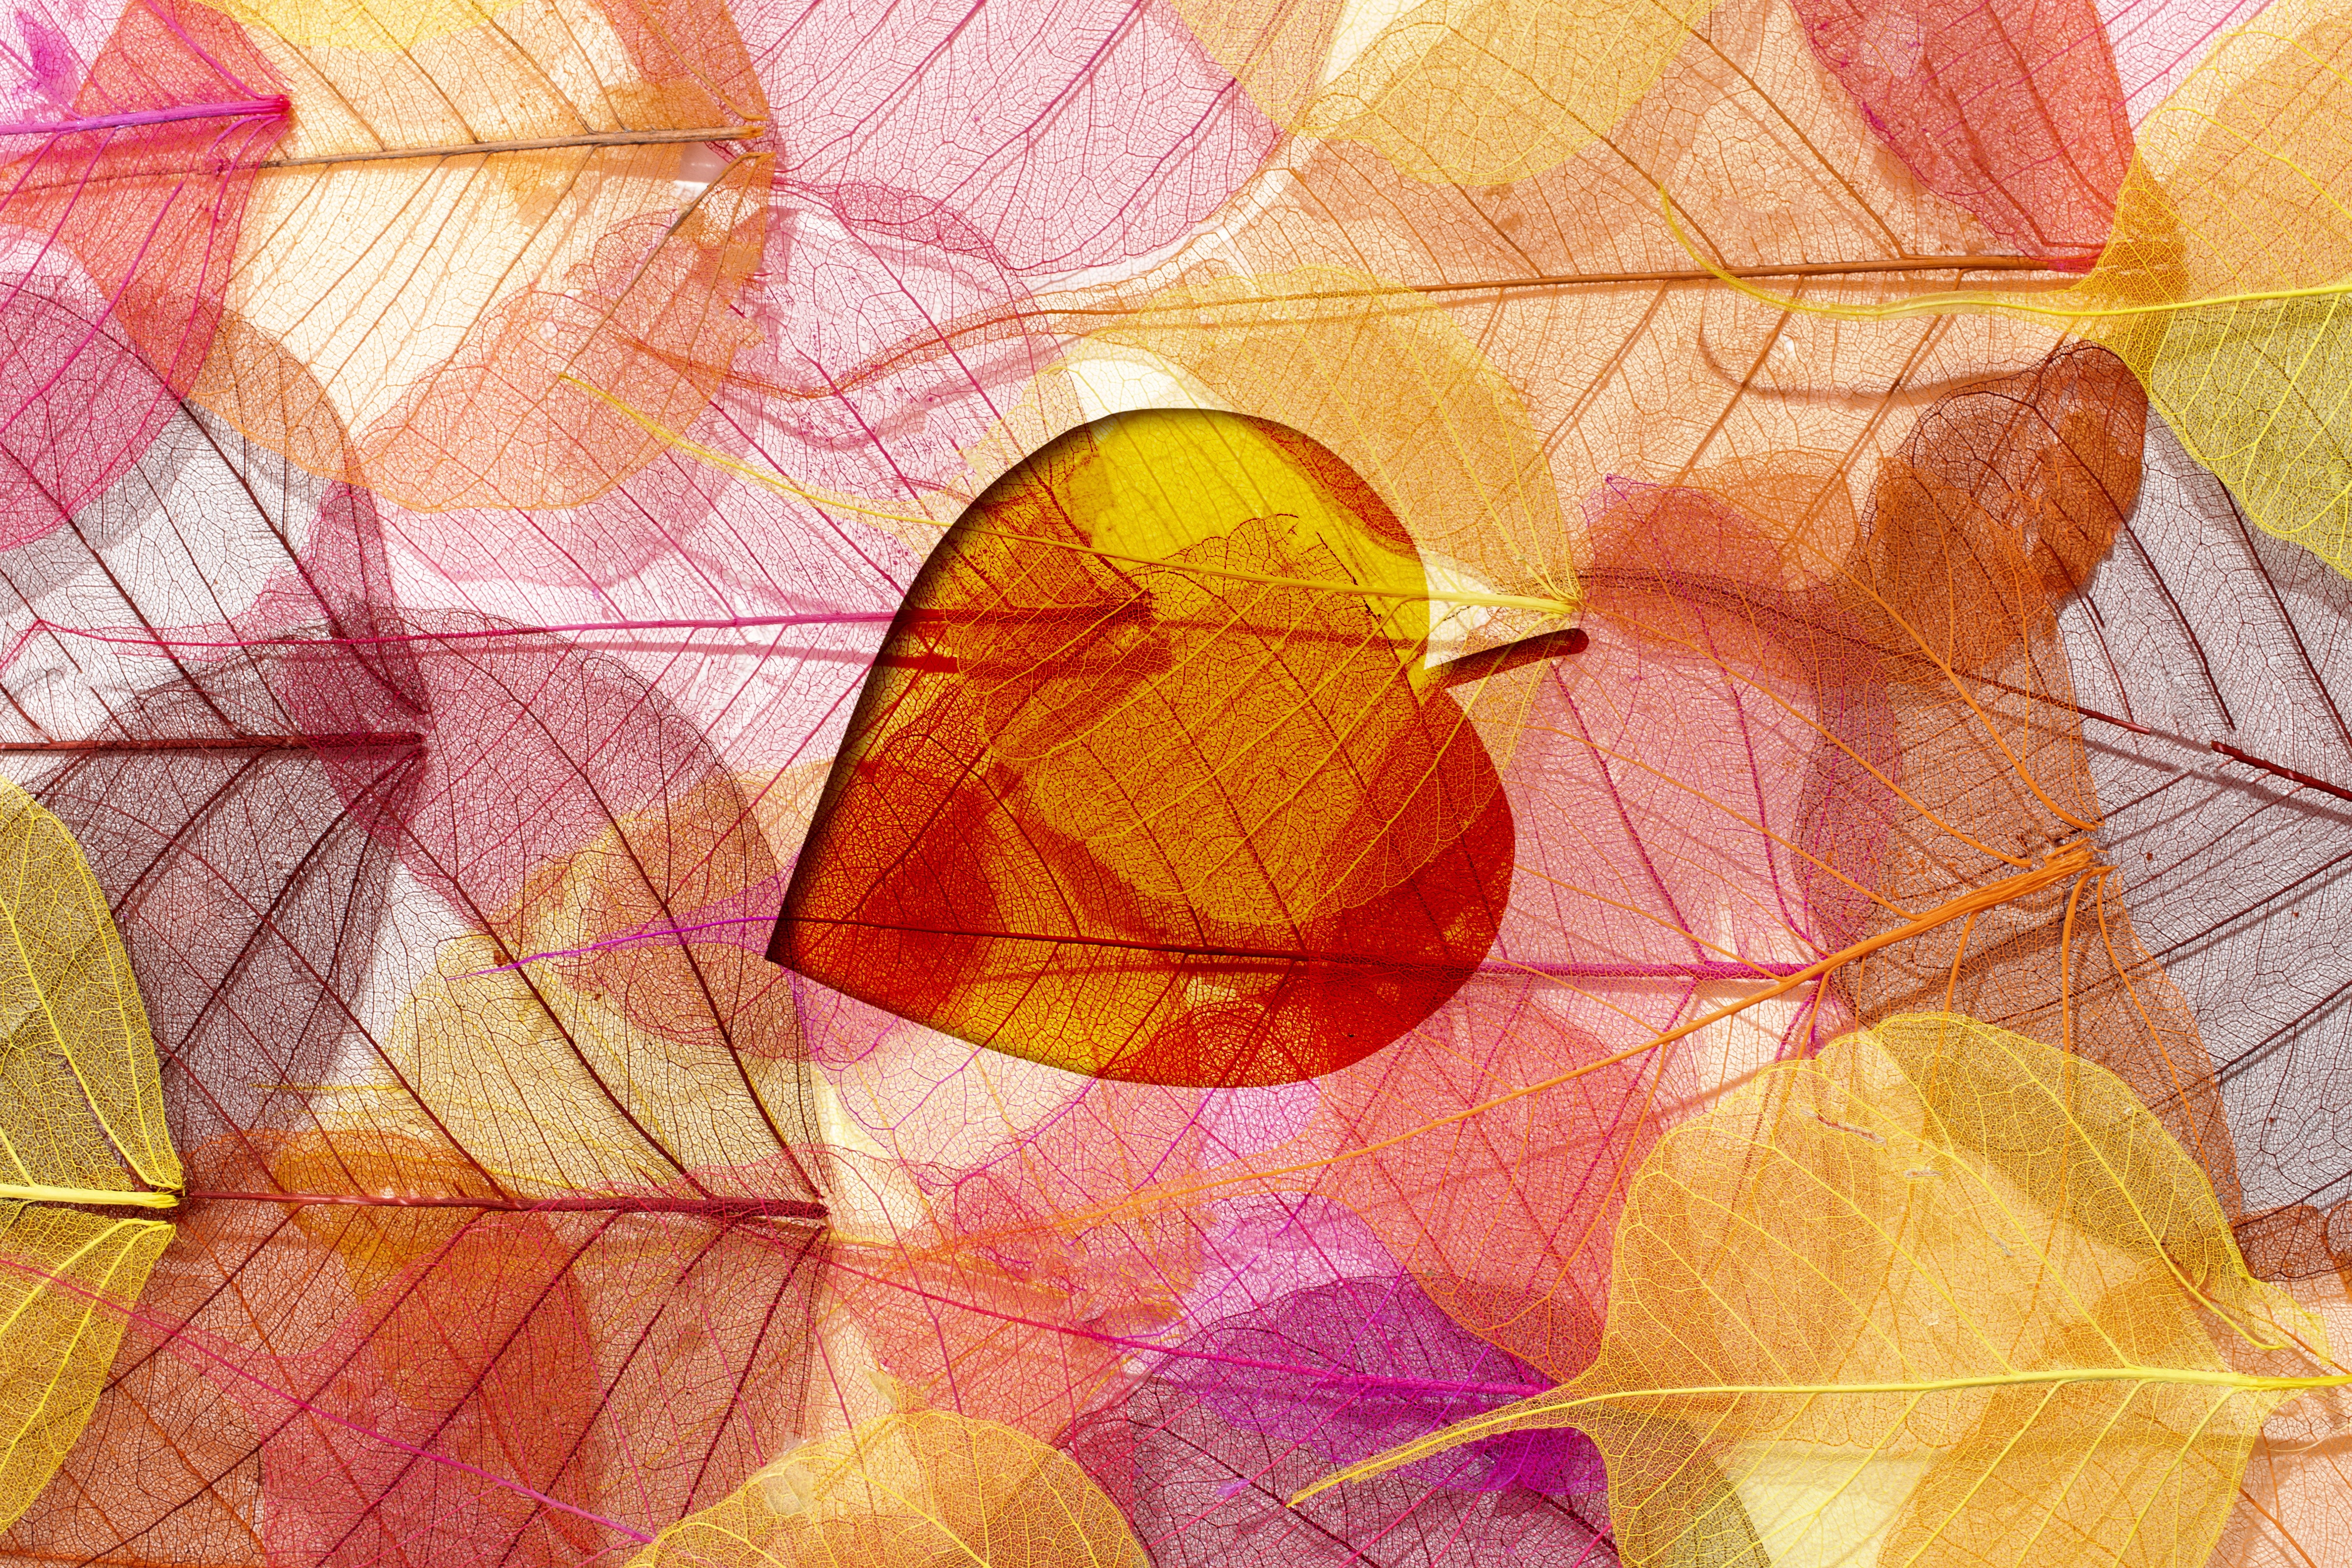 Artistic Leaf HD Wallpaper | Background Image